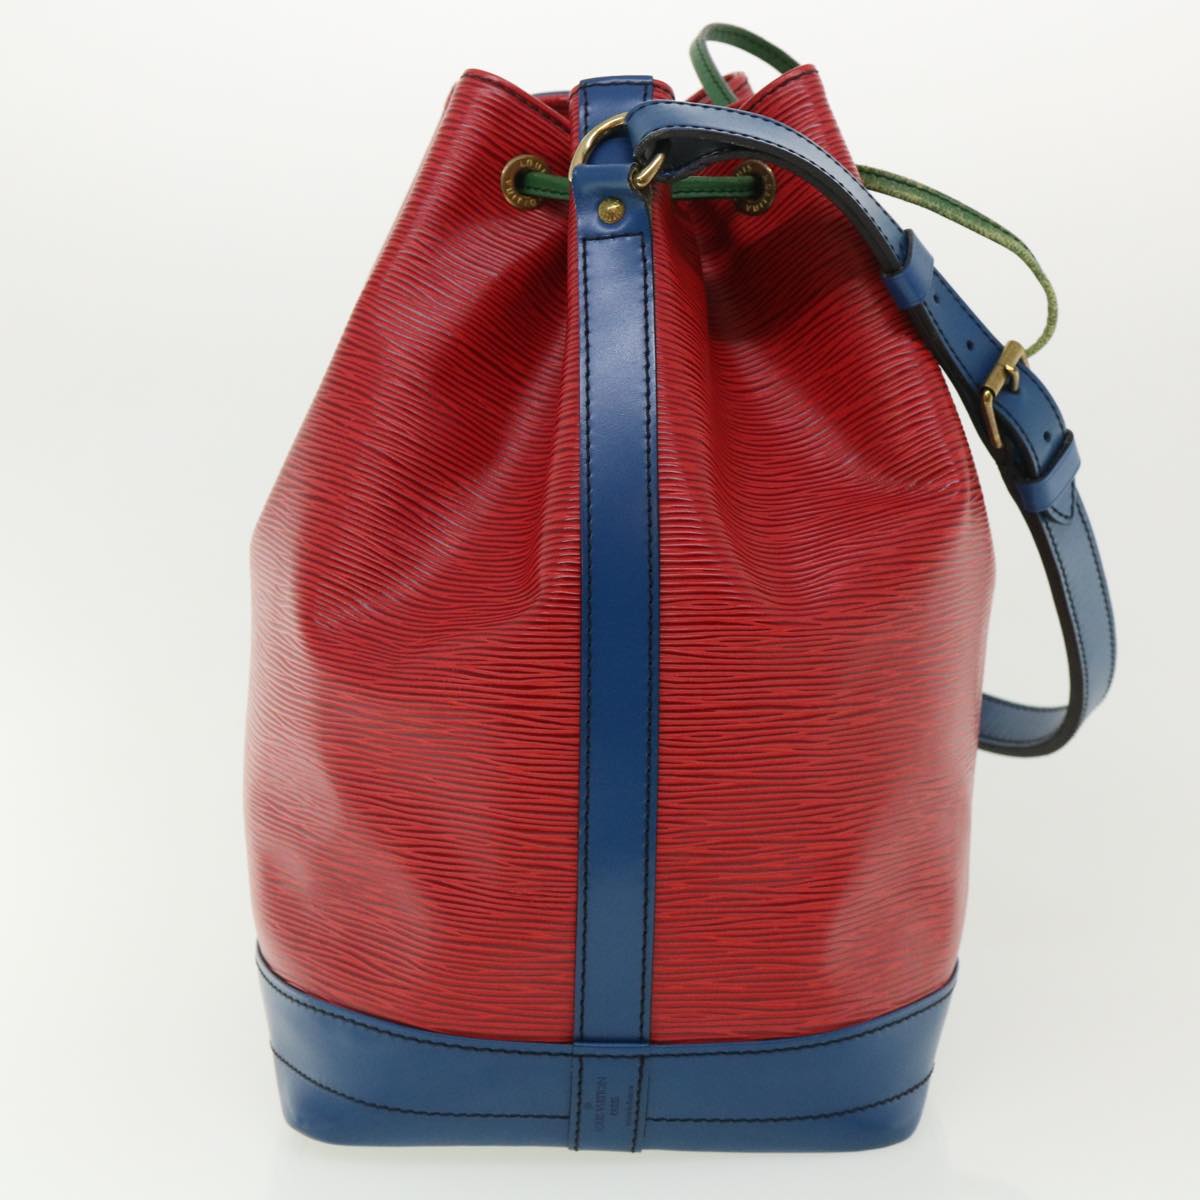 LOUIS VUITTON Epi Toriko color Noe Shoulder Bag Red Blue Green M44084 Auth 34330